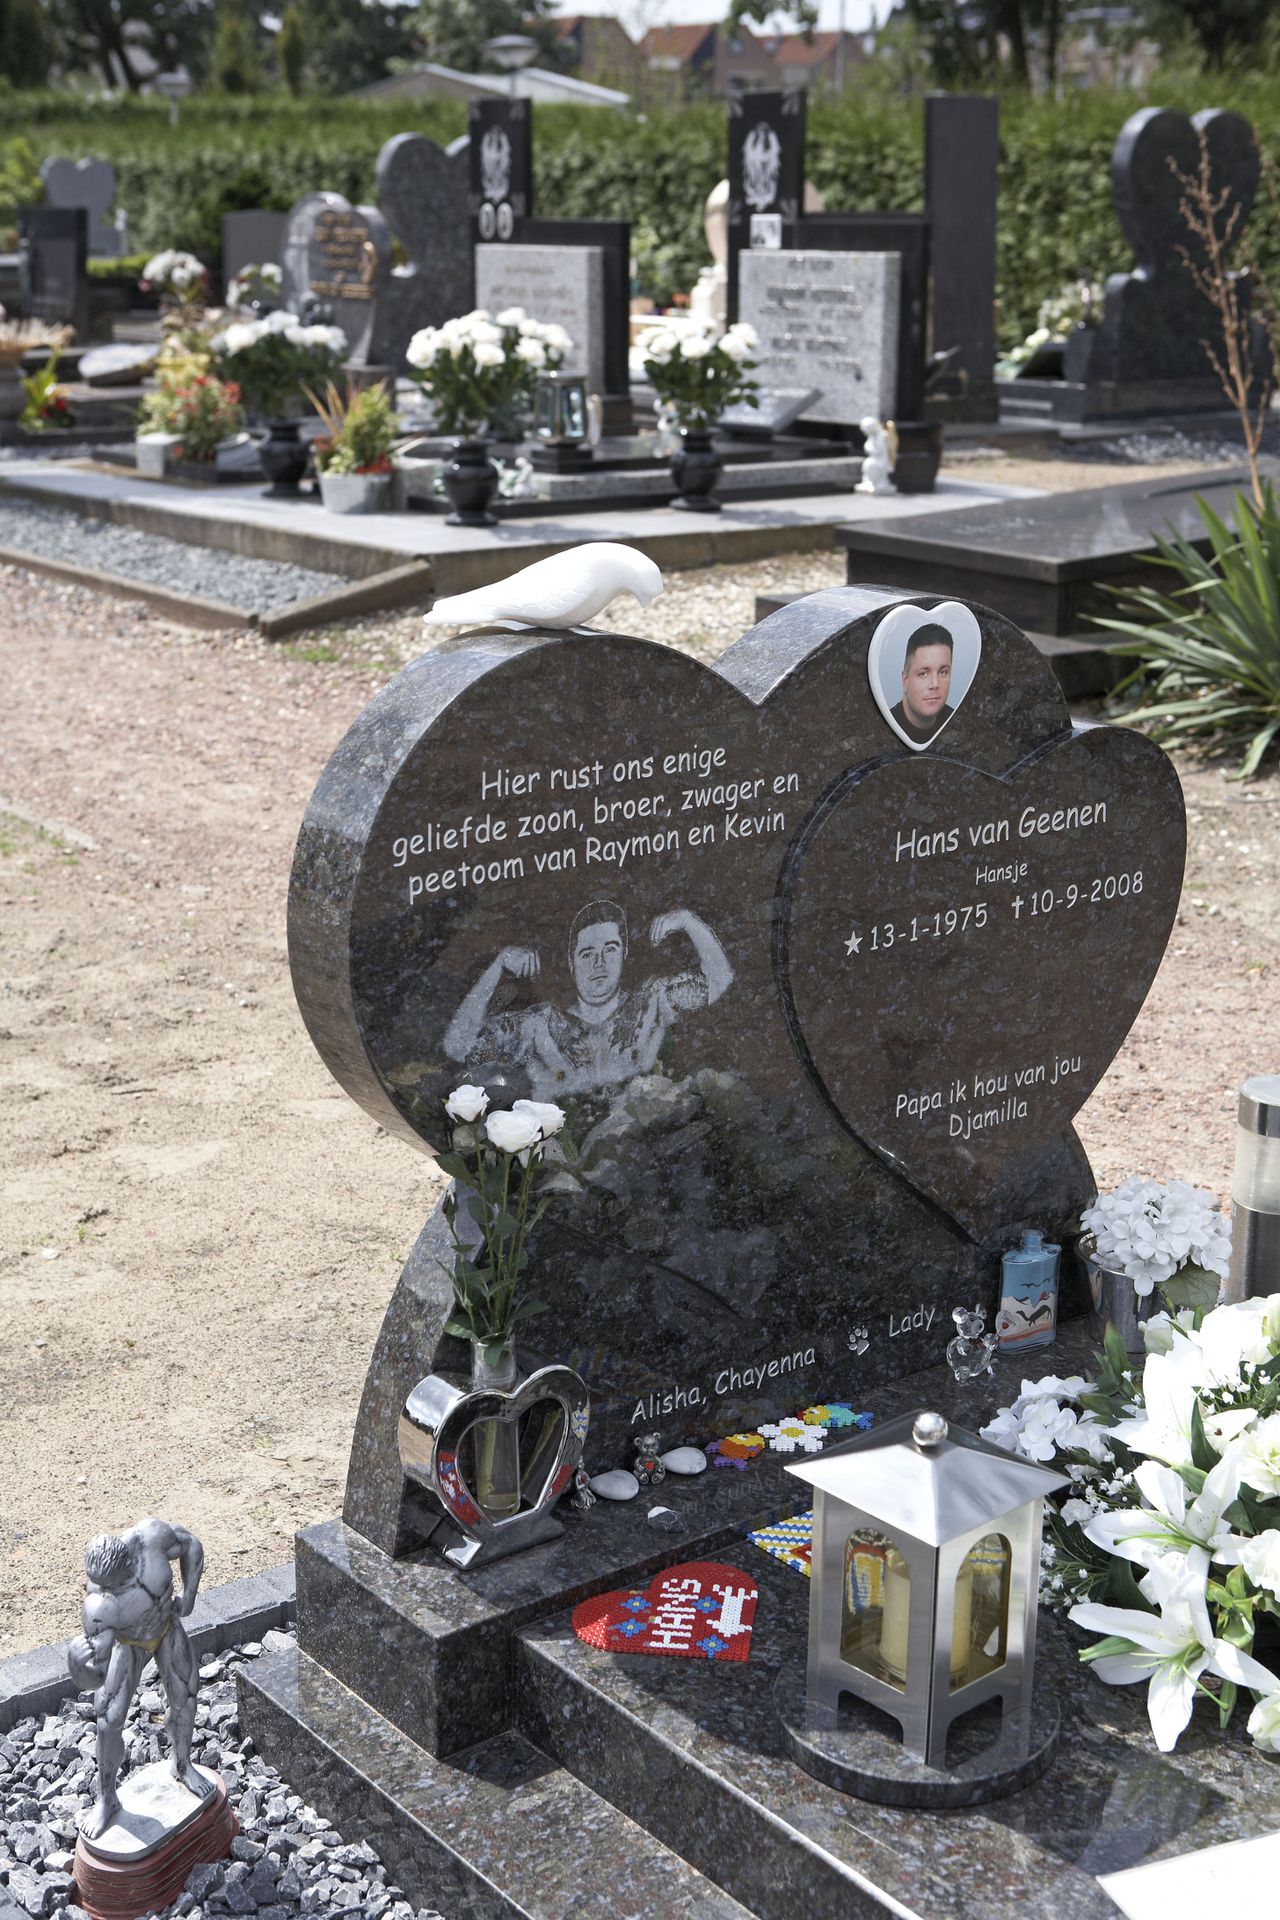 Foto (links)Het graf van Hans van Geenen in Oss. Oss, 28 juli 2009 Het graf van de drugshandelaar Hans van Geenen op begraafplaats "Eikenboomgaard". Foto: Walter Herfst